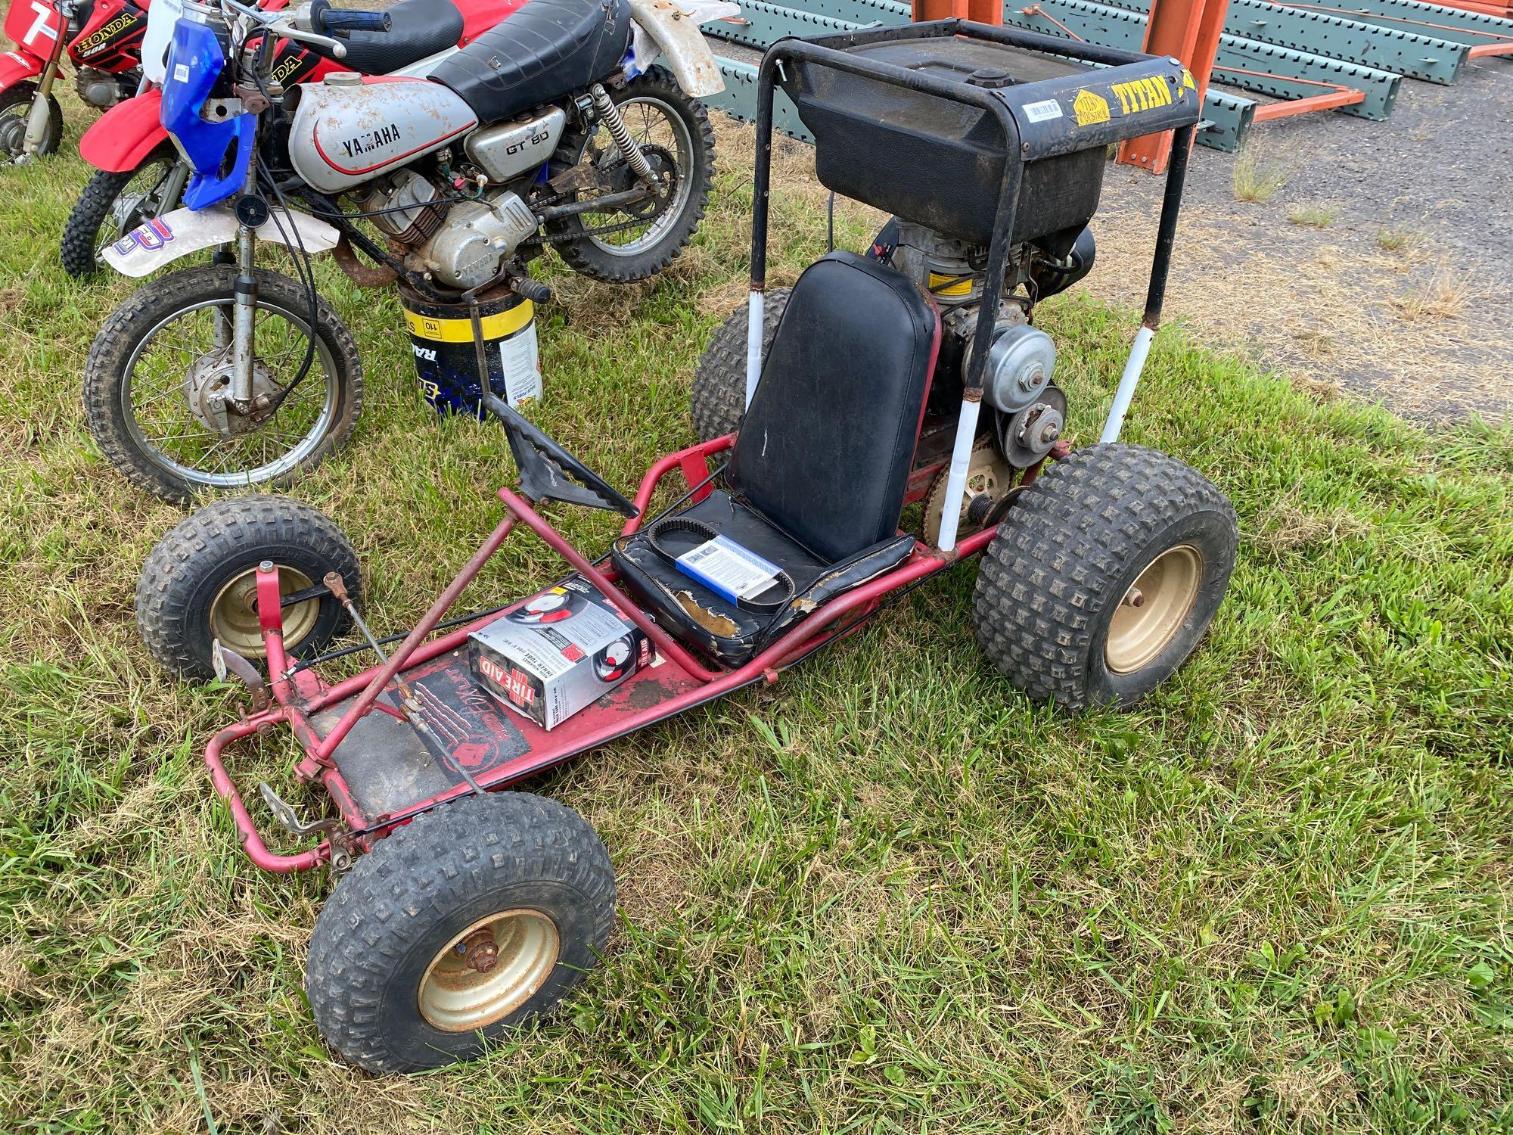 Image for Generator Go Kart, 7.5hp, needs tires, runs well per seller